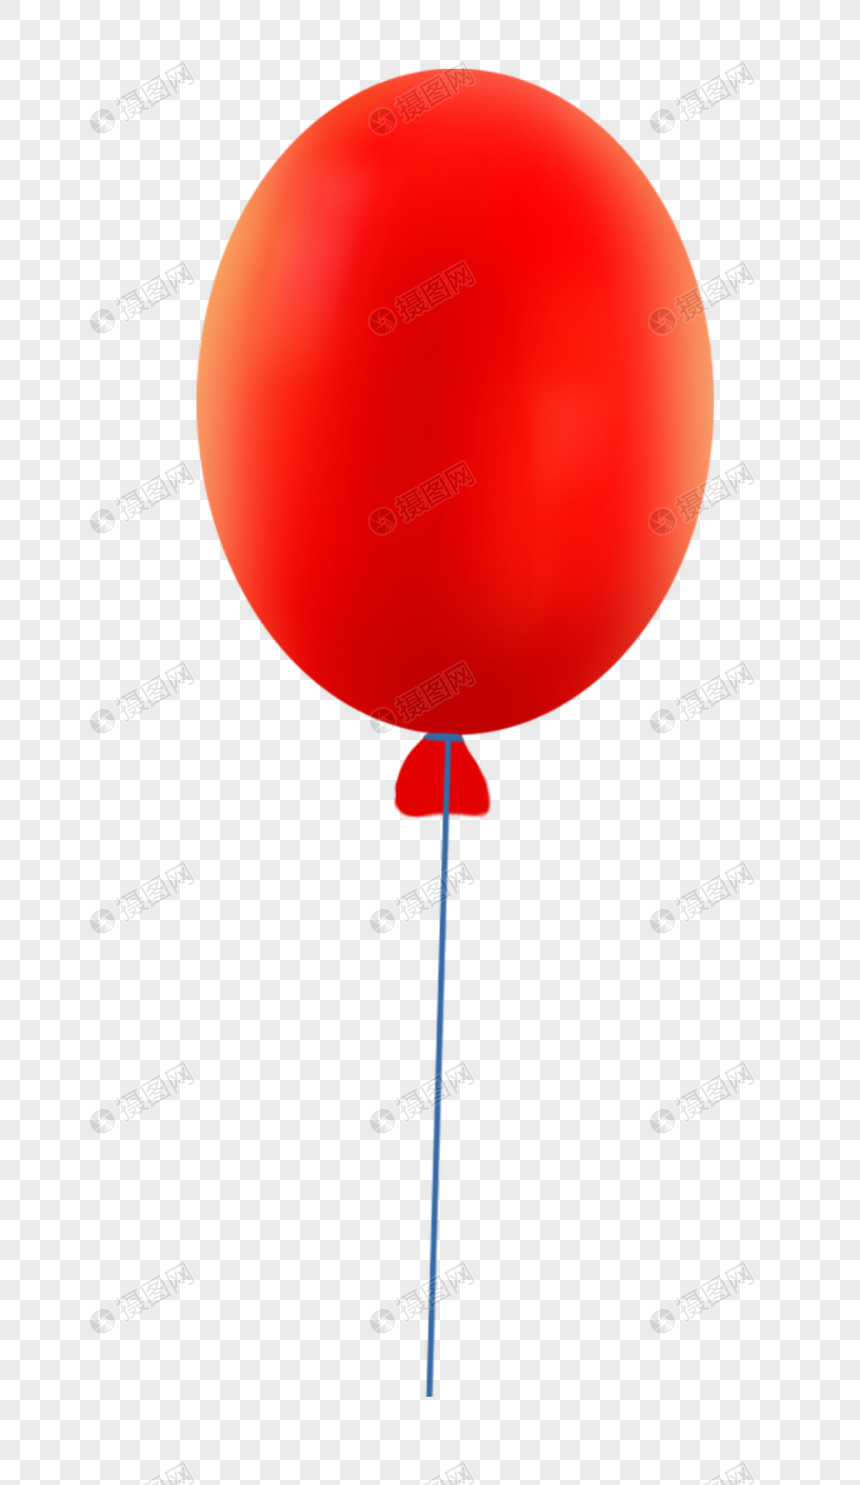 Картинка на торт красный шарик